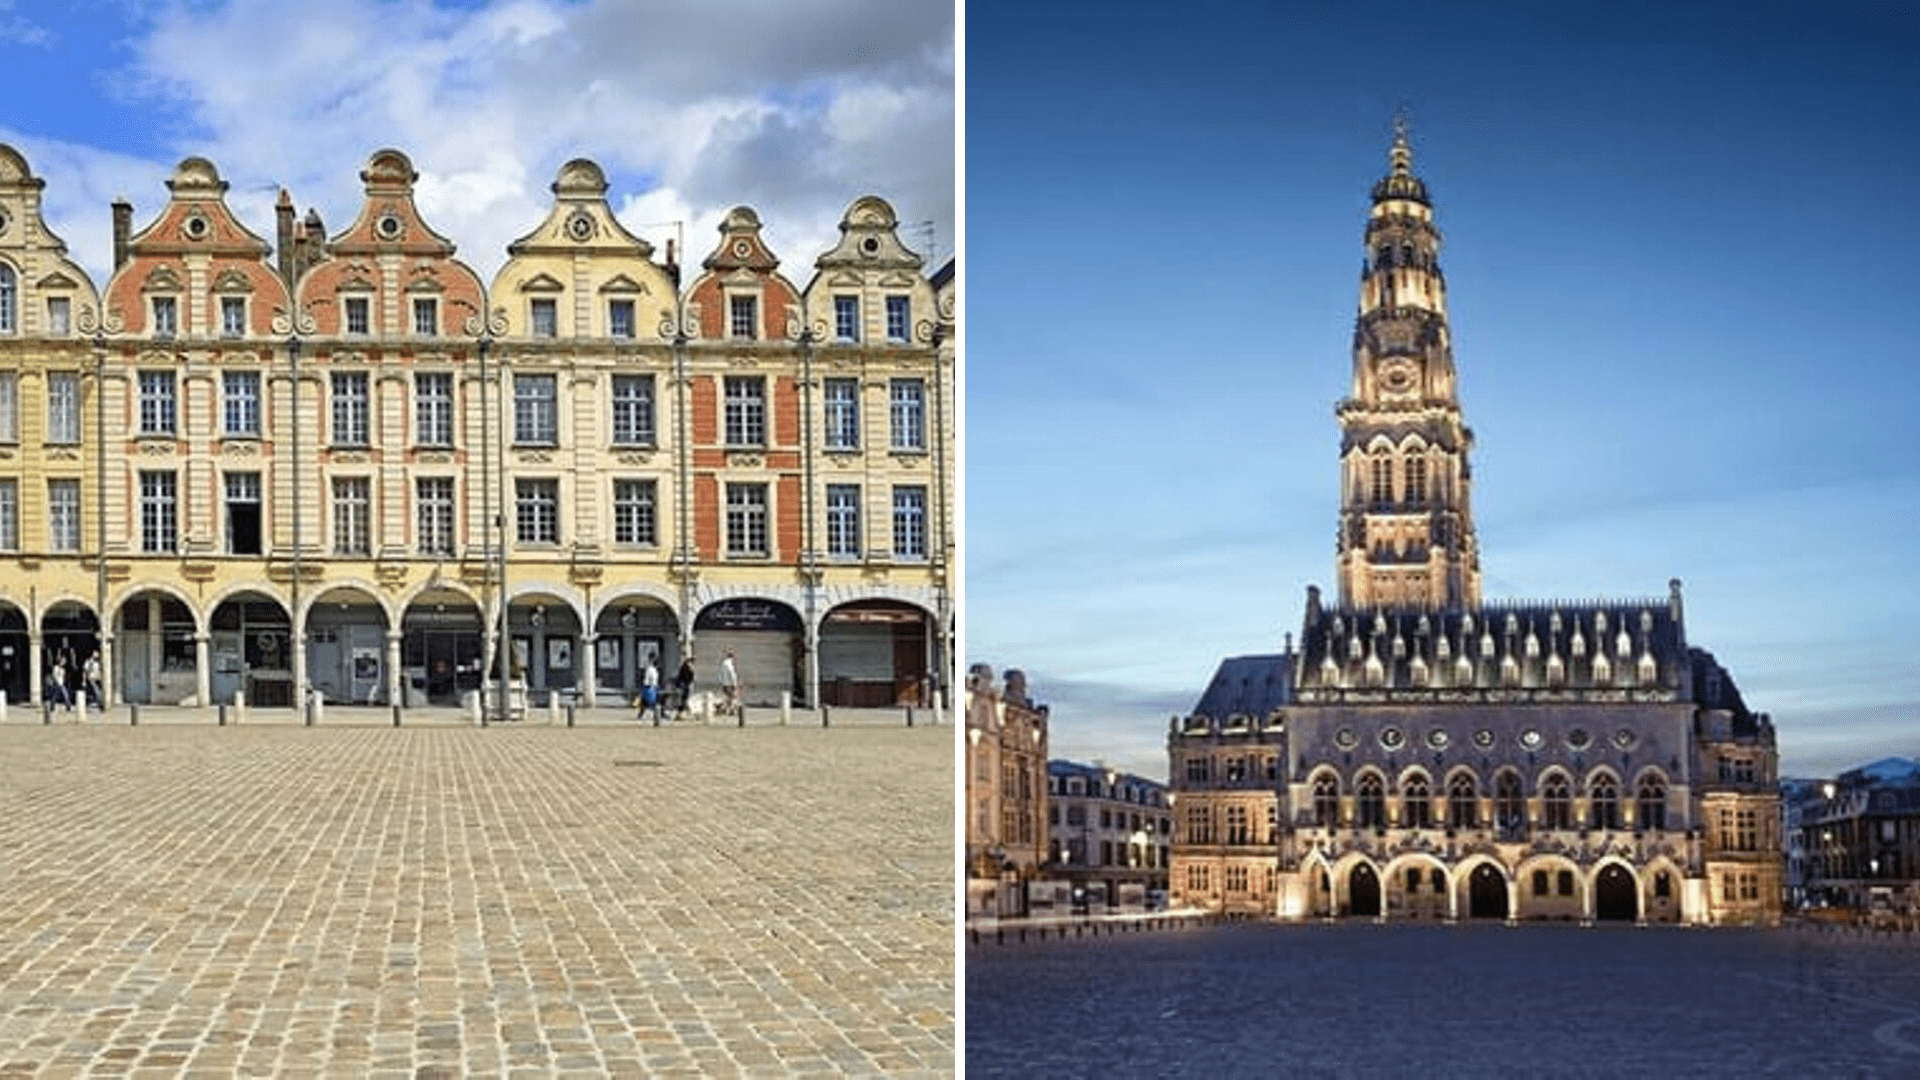 Arras famous monuments